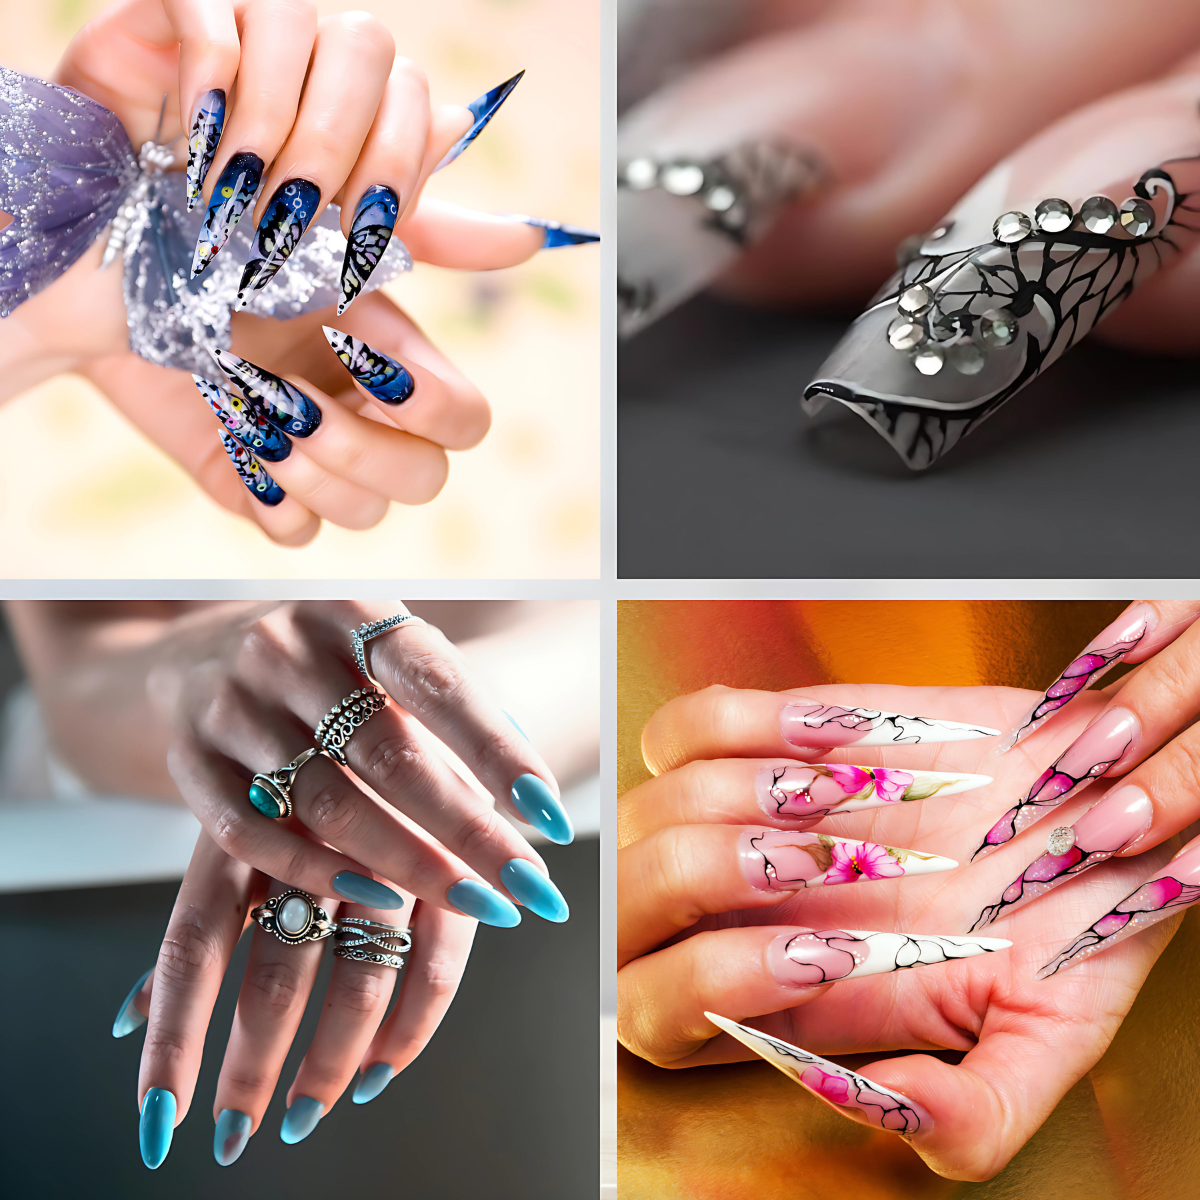 Maak je nagels mooi met onze nagelfrees. Profiteer van professionele resultaten voor een prachtige manicure!